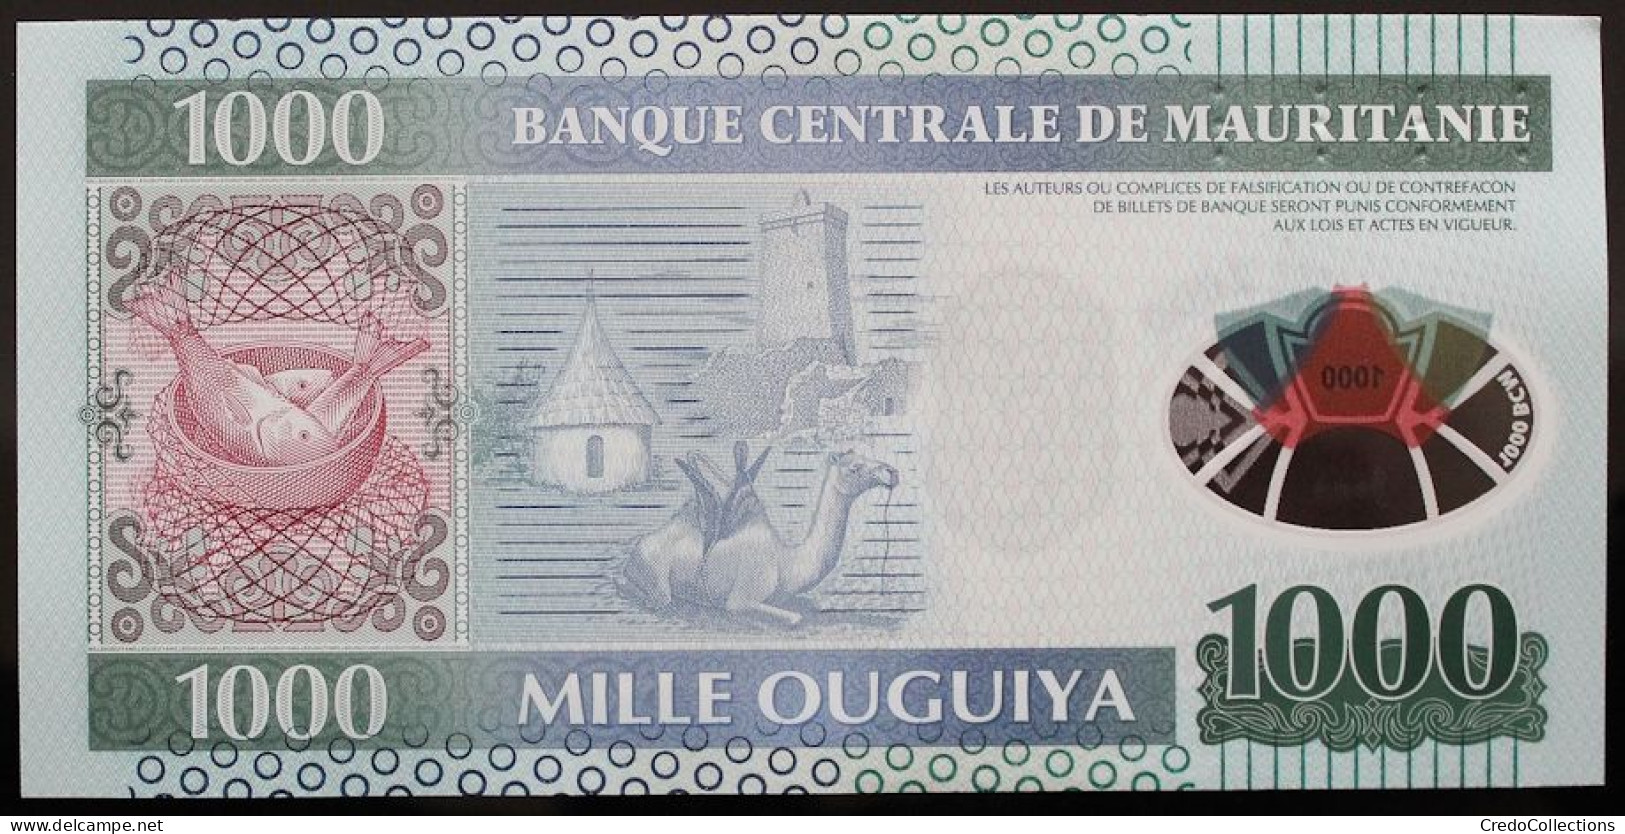 Mauritanie - 1000 Ouguiya - 2014 - PICK 19 - NEUF - Mauritanie